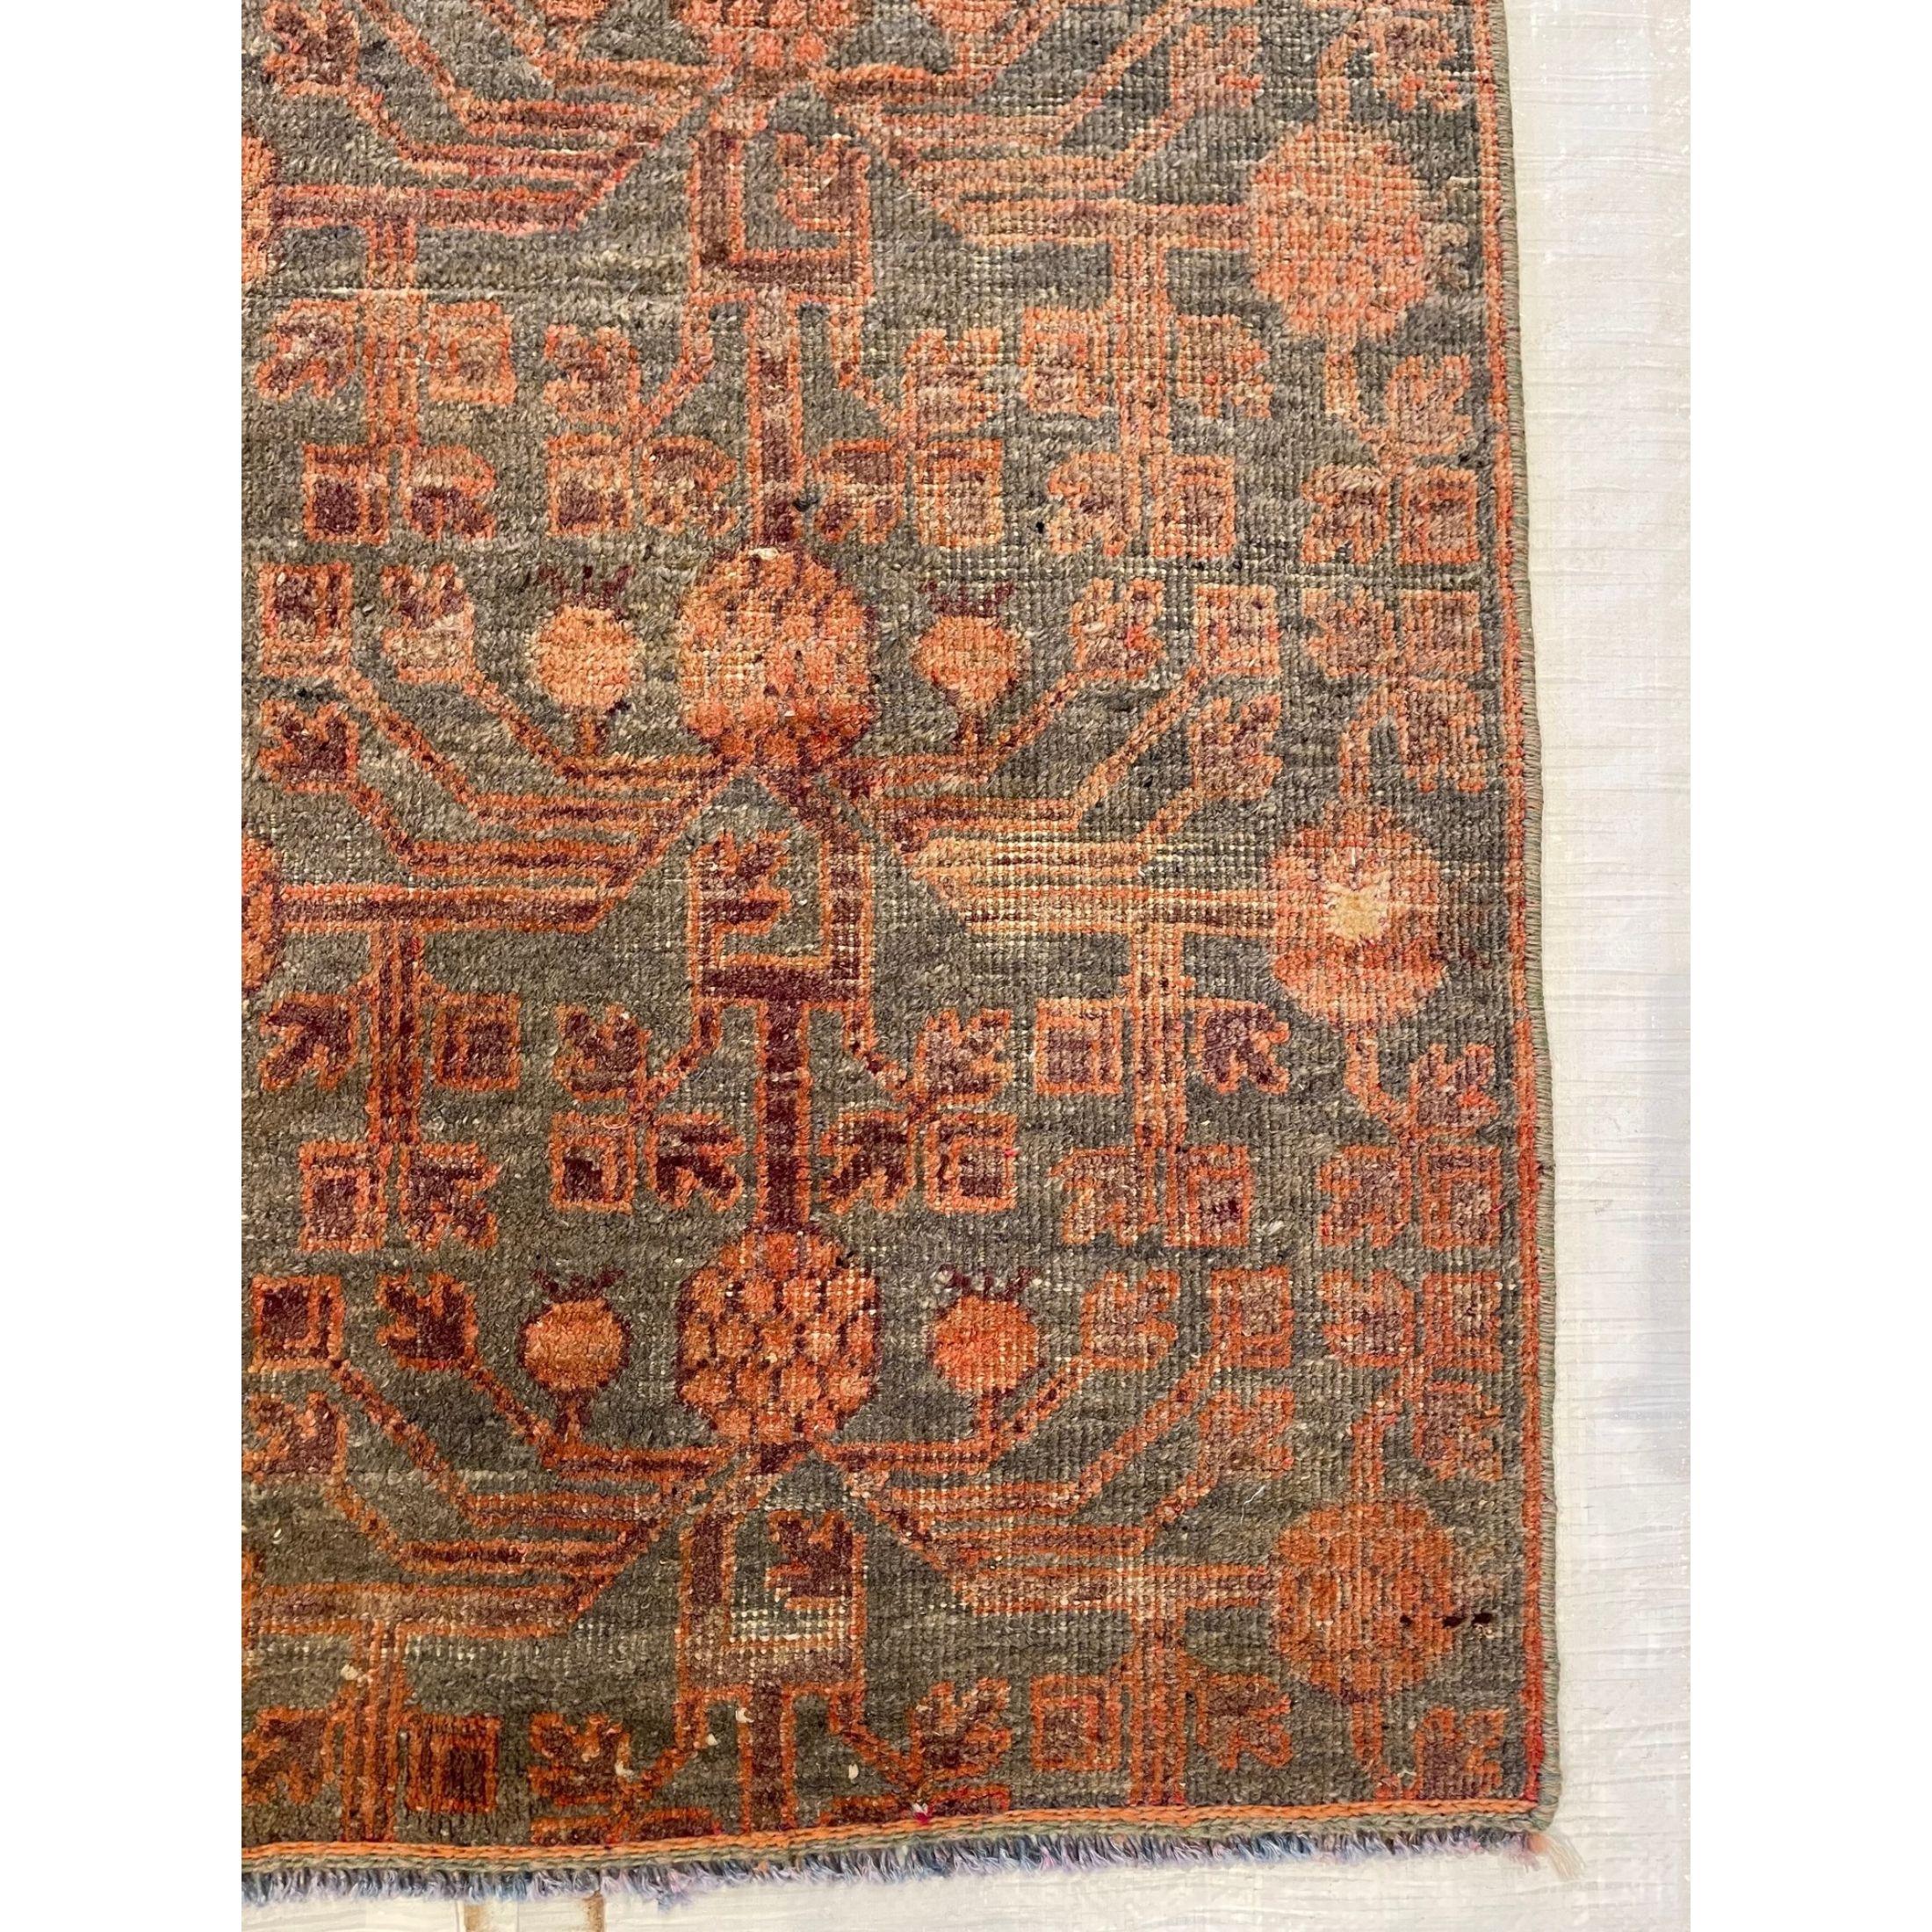 Other Antique Abstract Design Khotan Samarkand Rug For Sale